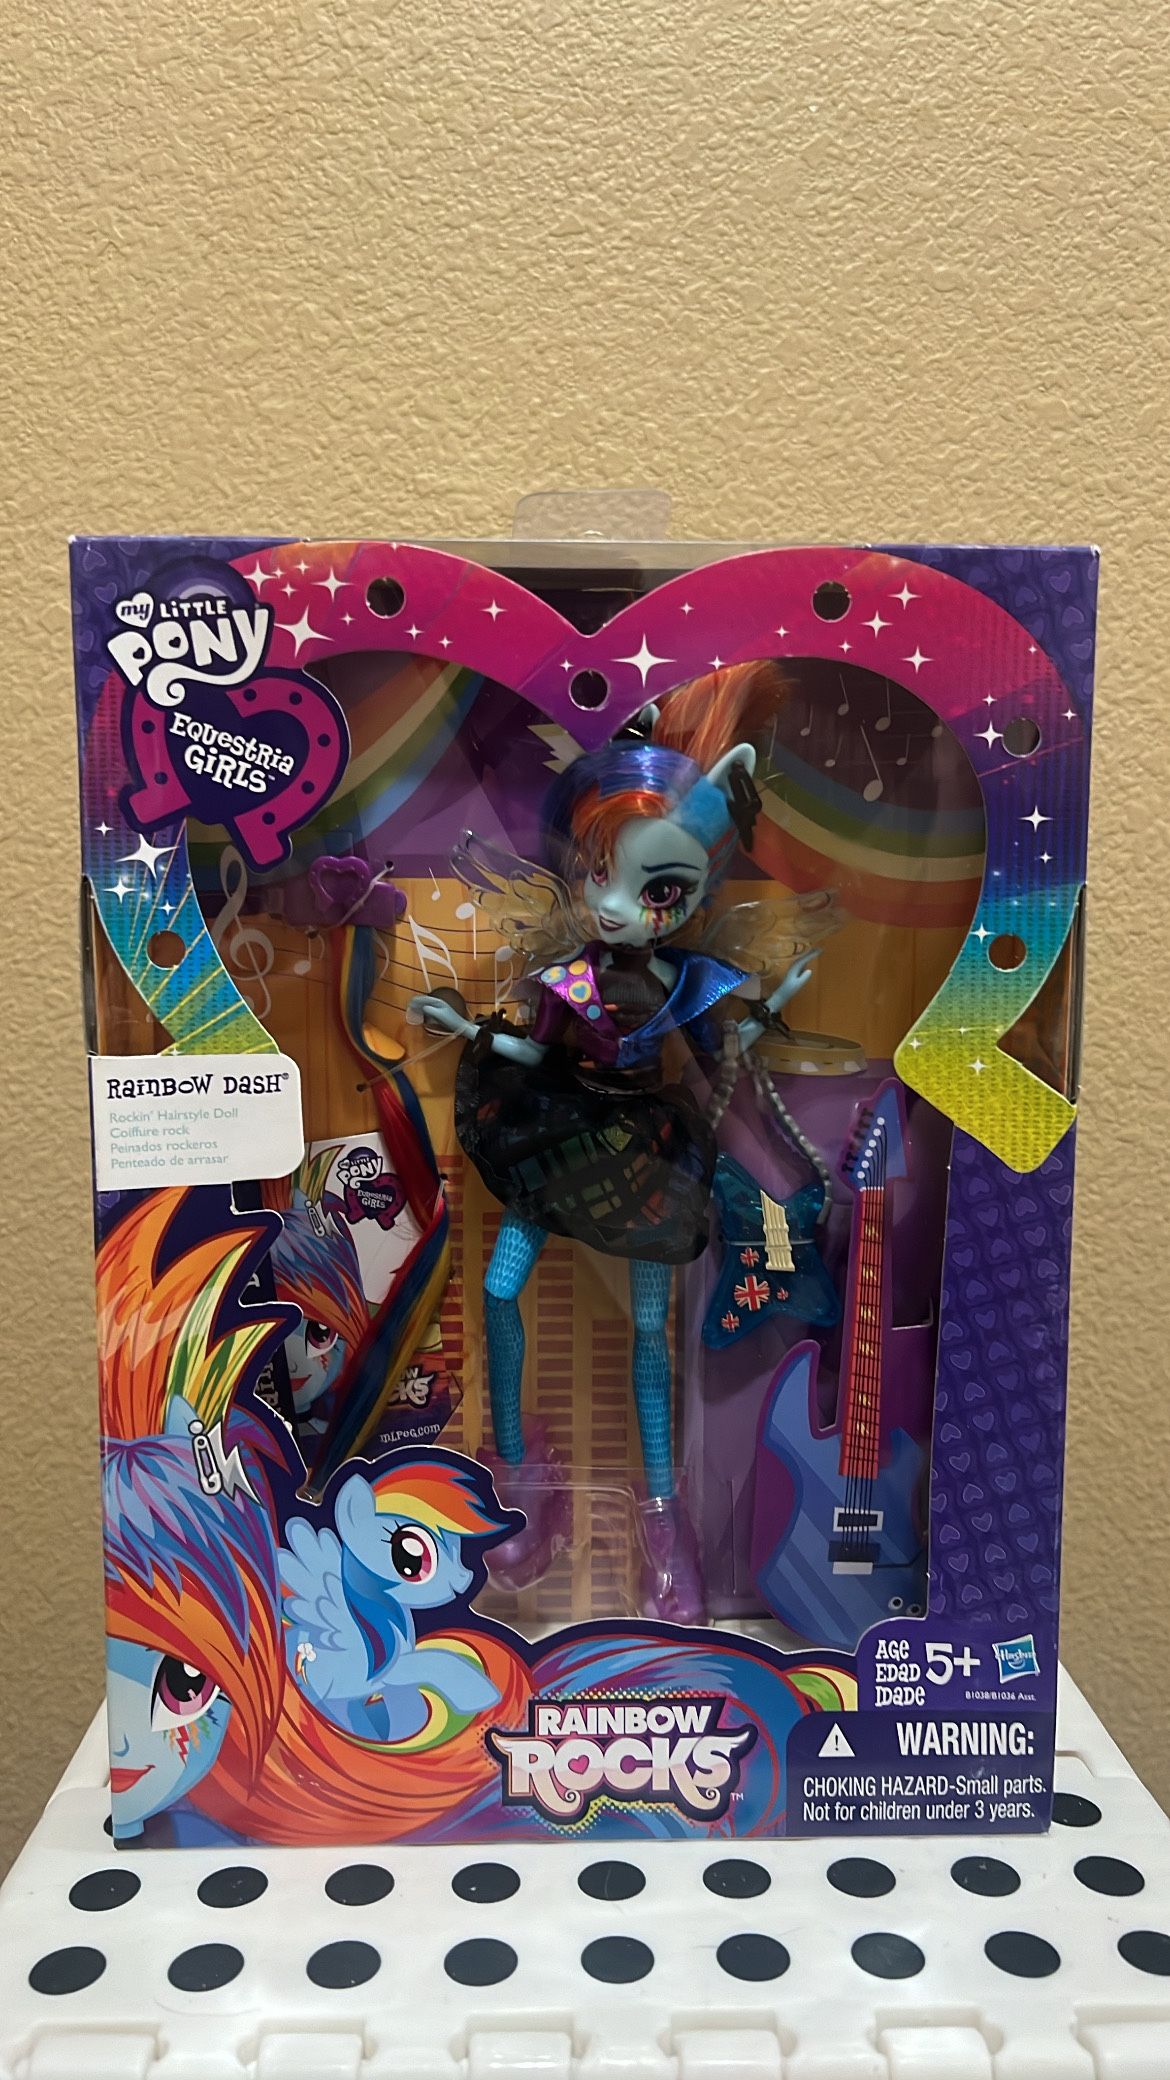 My Little Pony Equestria Girls Rainbow Rocks Rainbow Dash Rockin' Hairstyle Doll